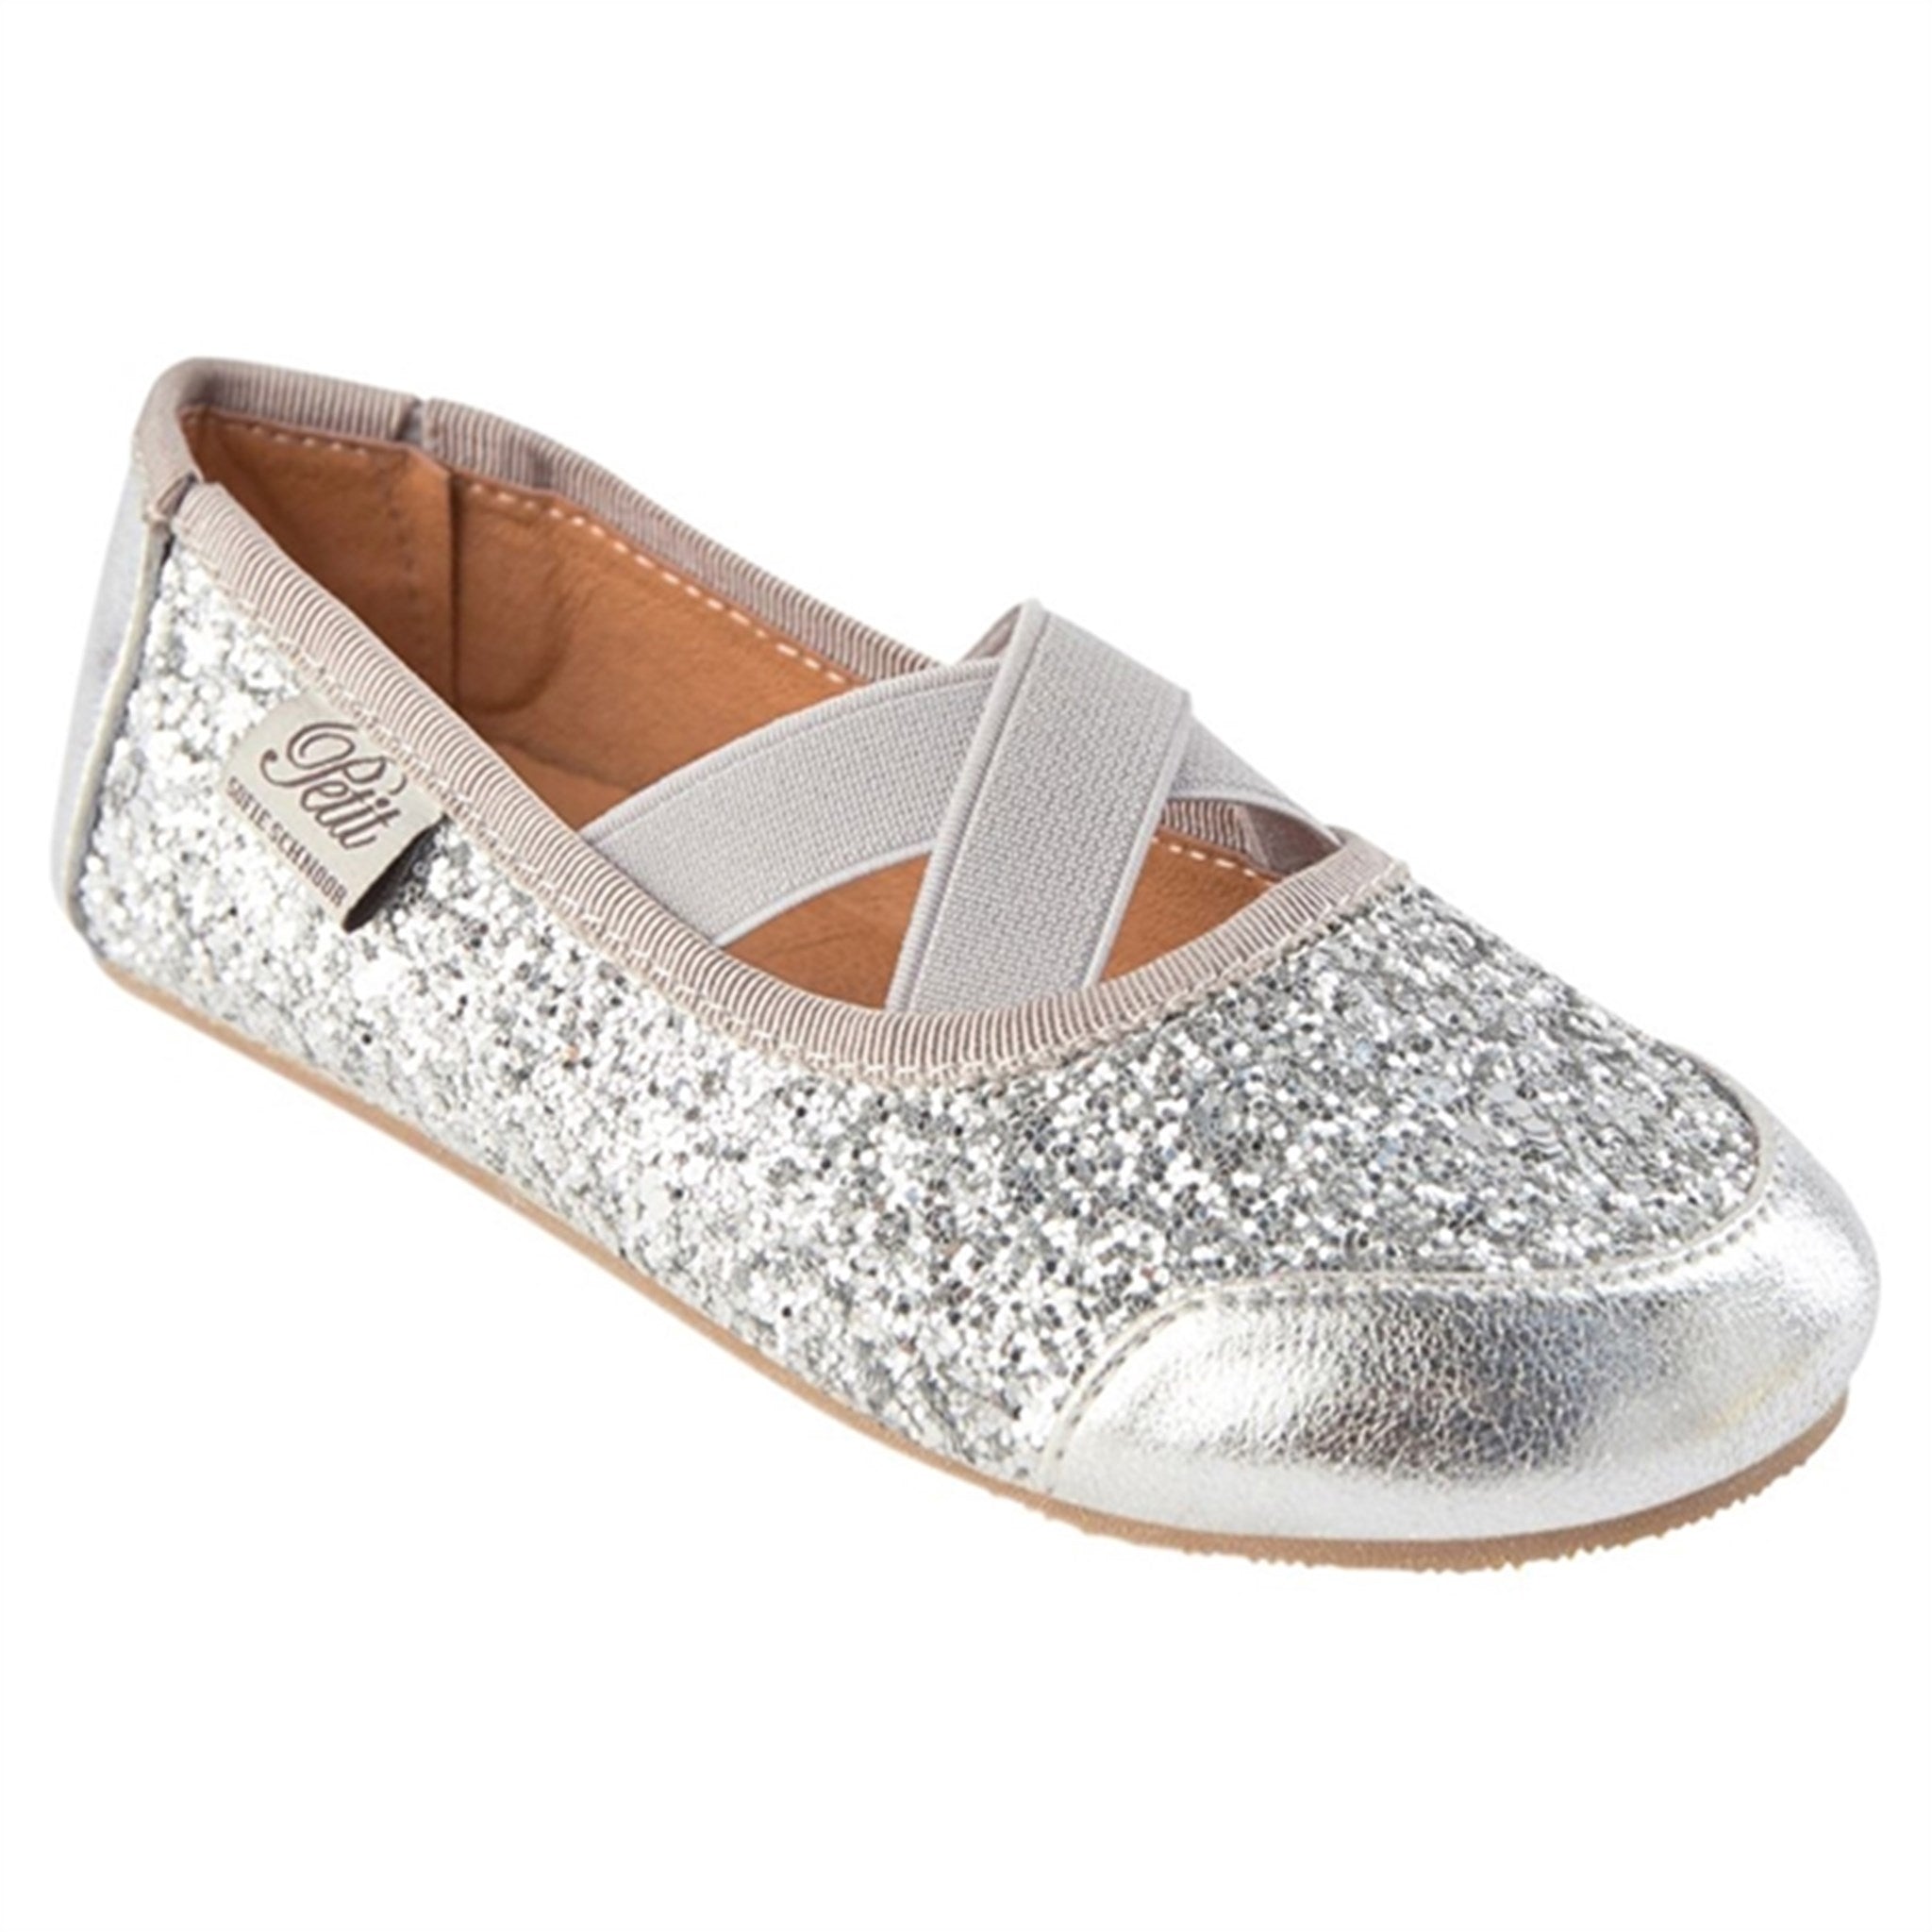 Sofie Schnoor Ballerina Indoors Shoes Silver 5